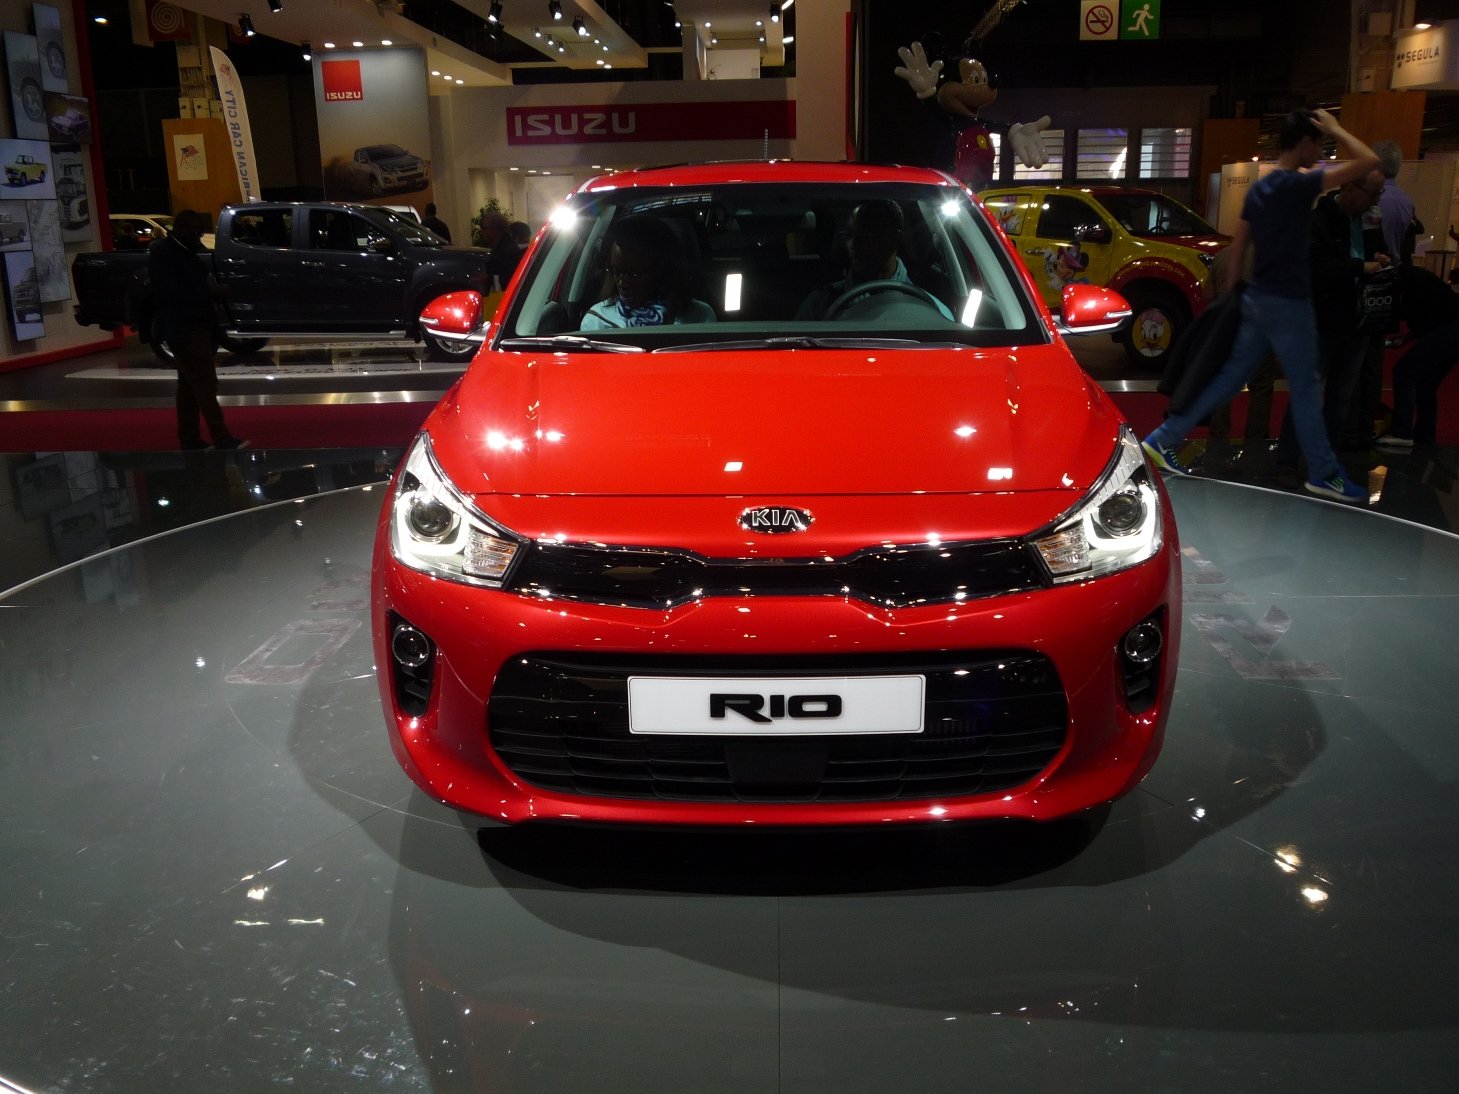 Nová Kia Rio bude patřit k čelním představitelům segmentu malých automobilů.